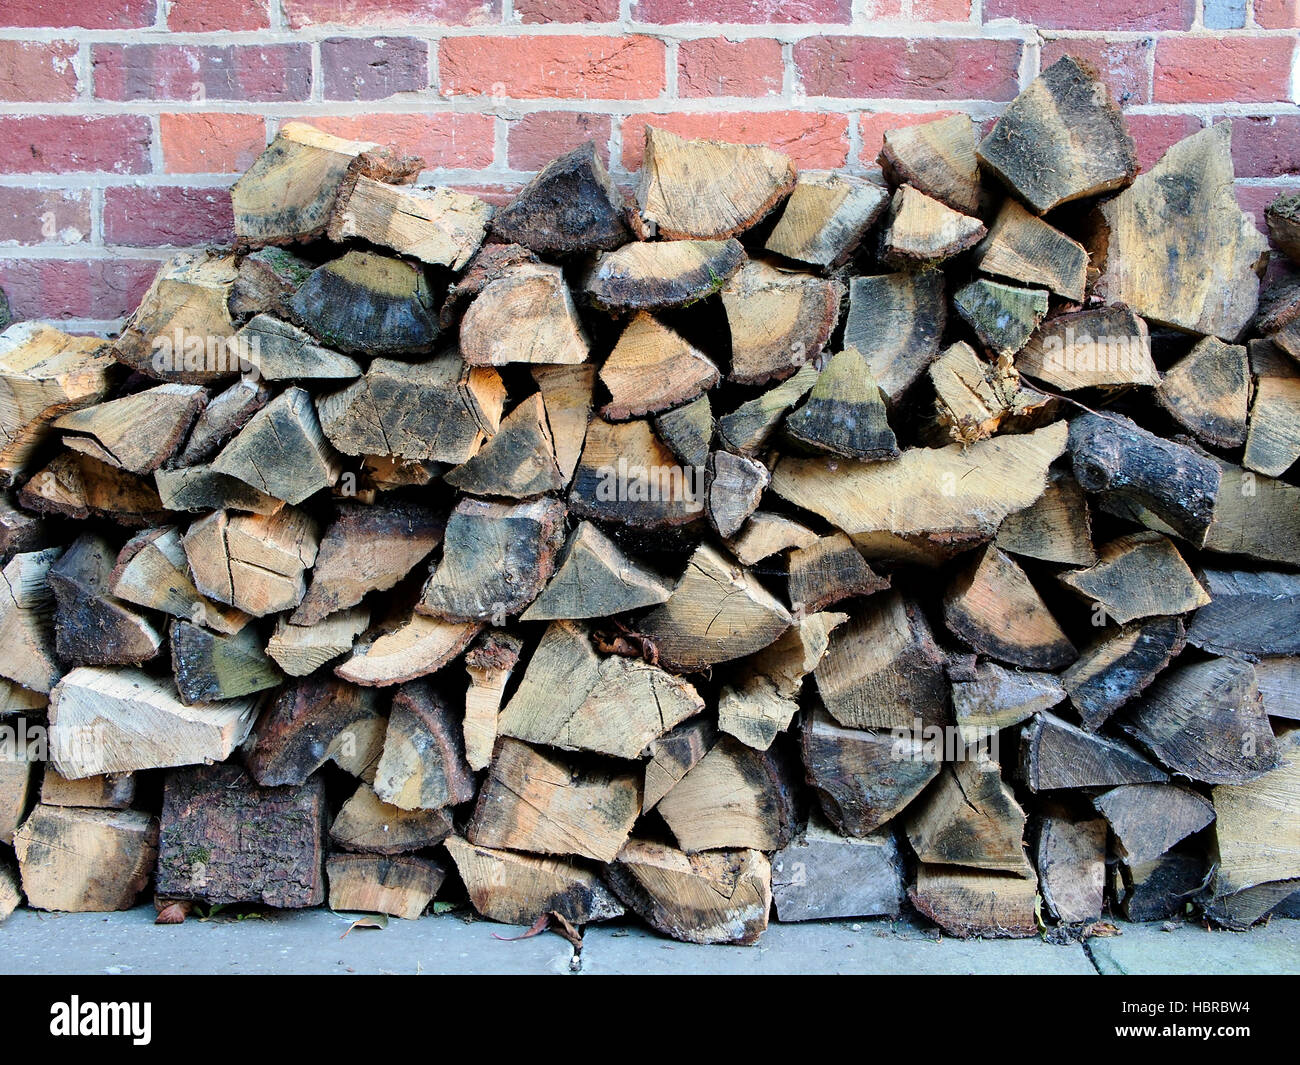 Ein Haufen von Scheitholz gespeichert unter dem Deckmantel einer Wand aus rotem Backstein bereit, auf einem offenen Feuer oder Log Holzofen gebrannt werden. Stockfoto